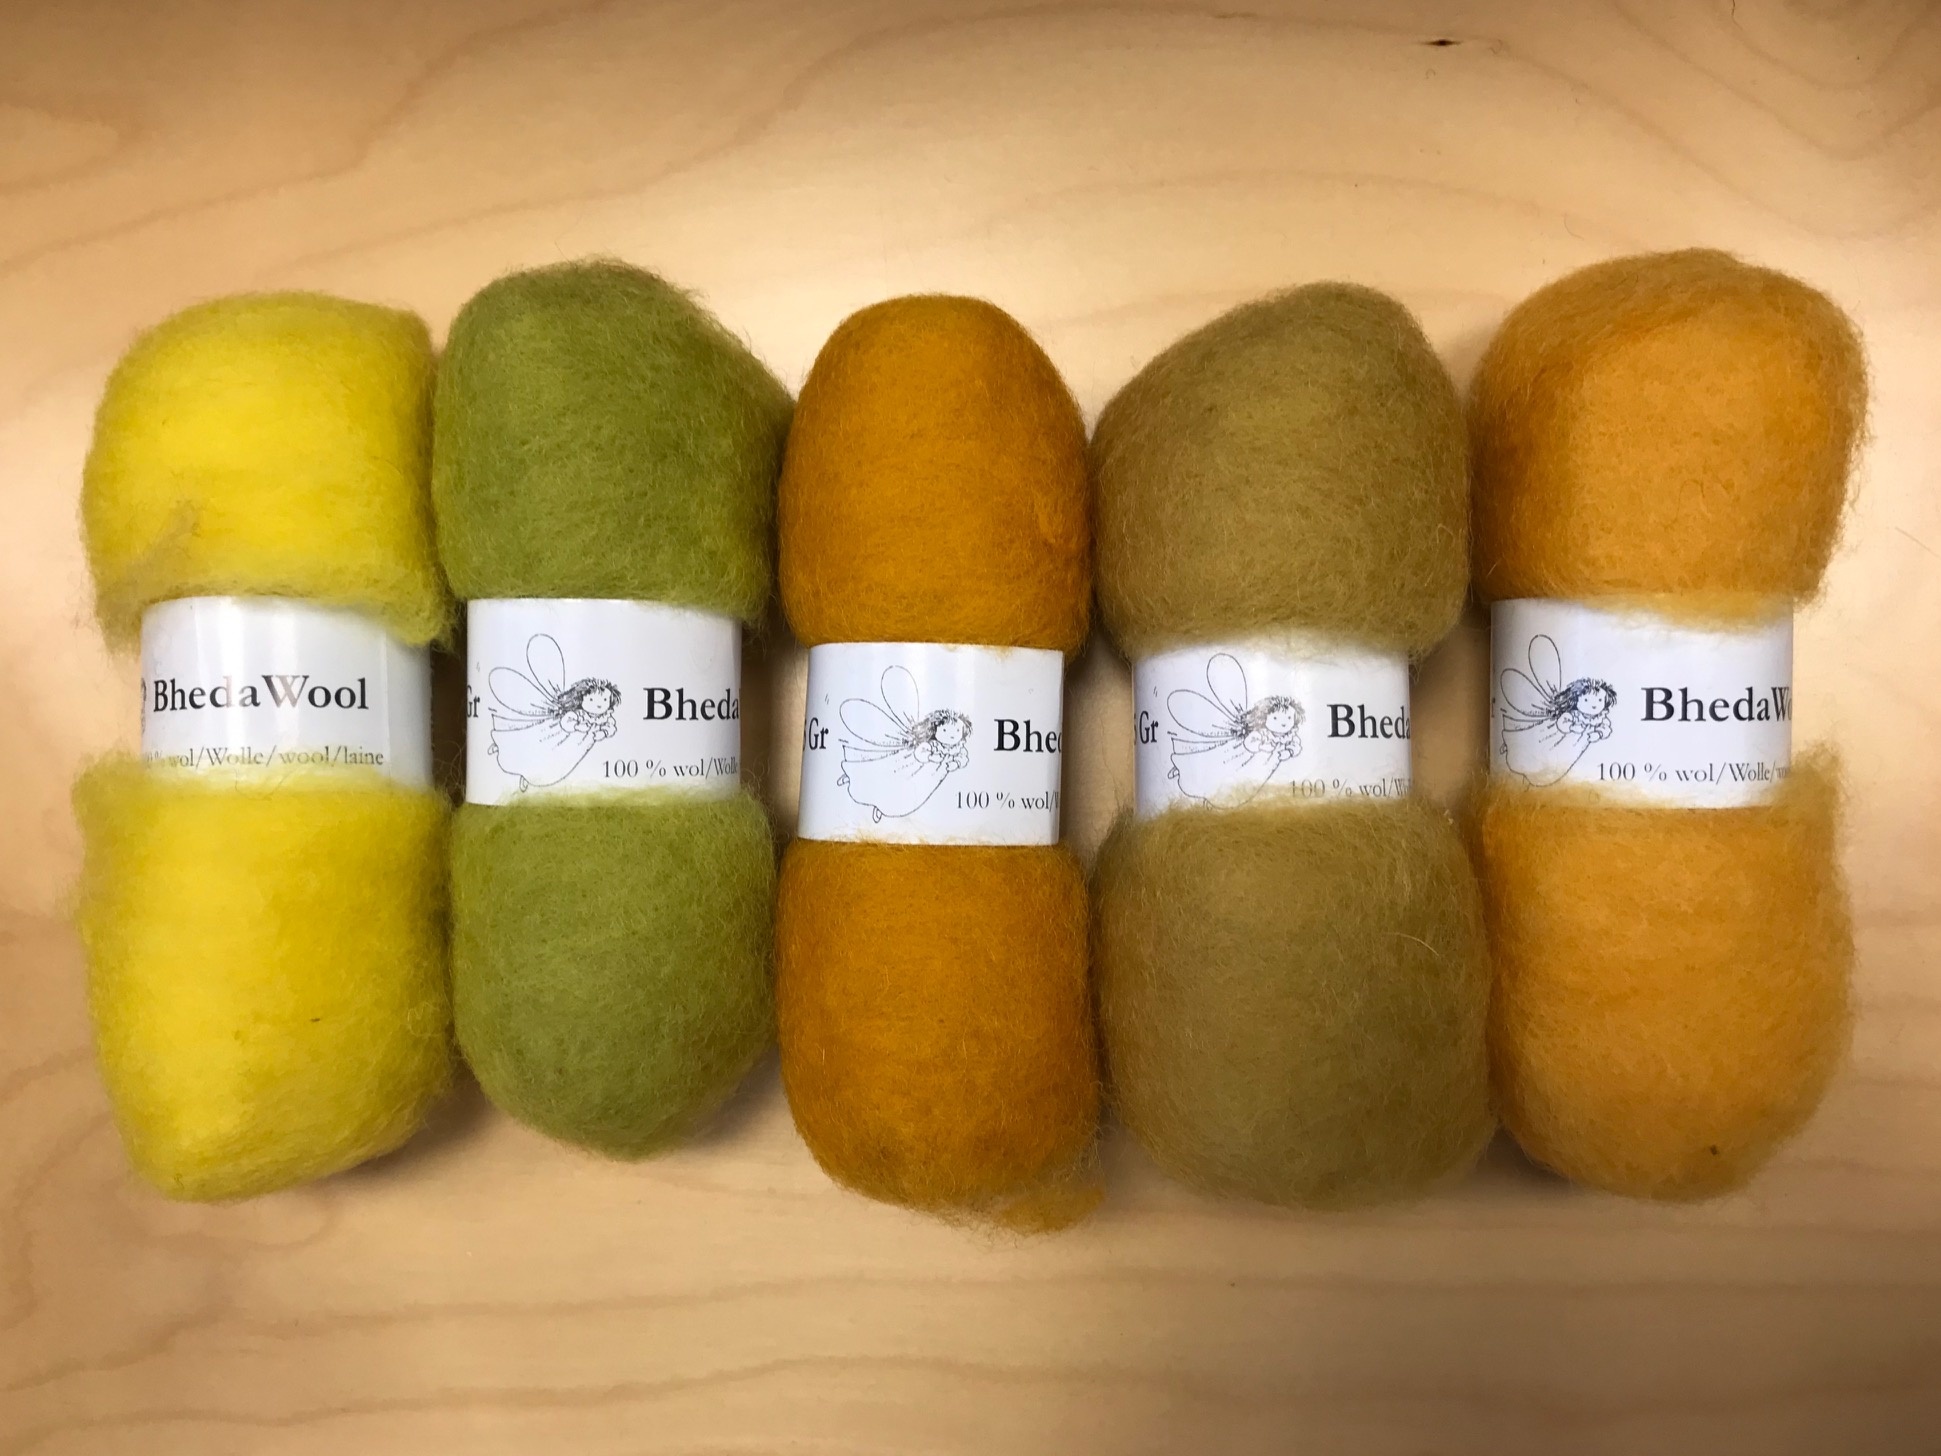 Bheda wool Bhedawol Set - 5 stuks van  25 gr. - Geel